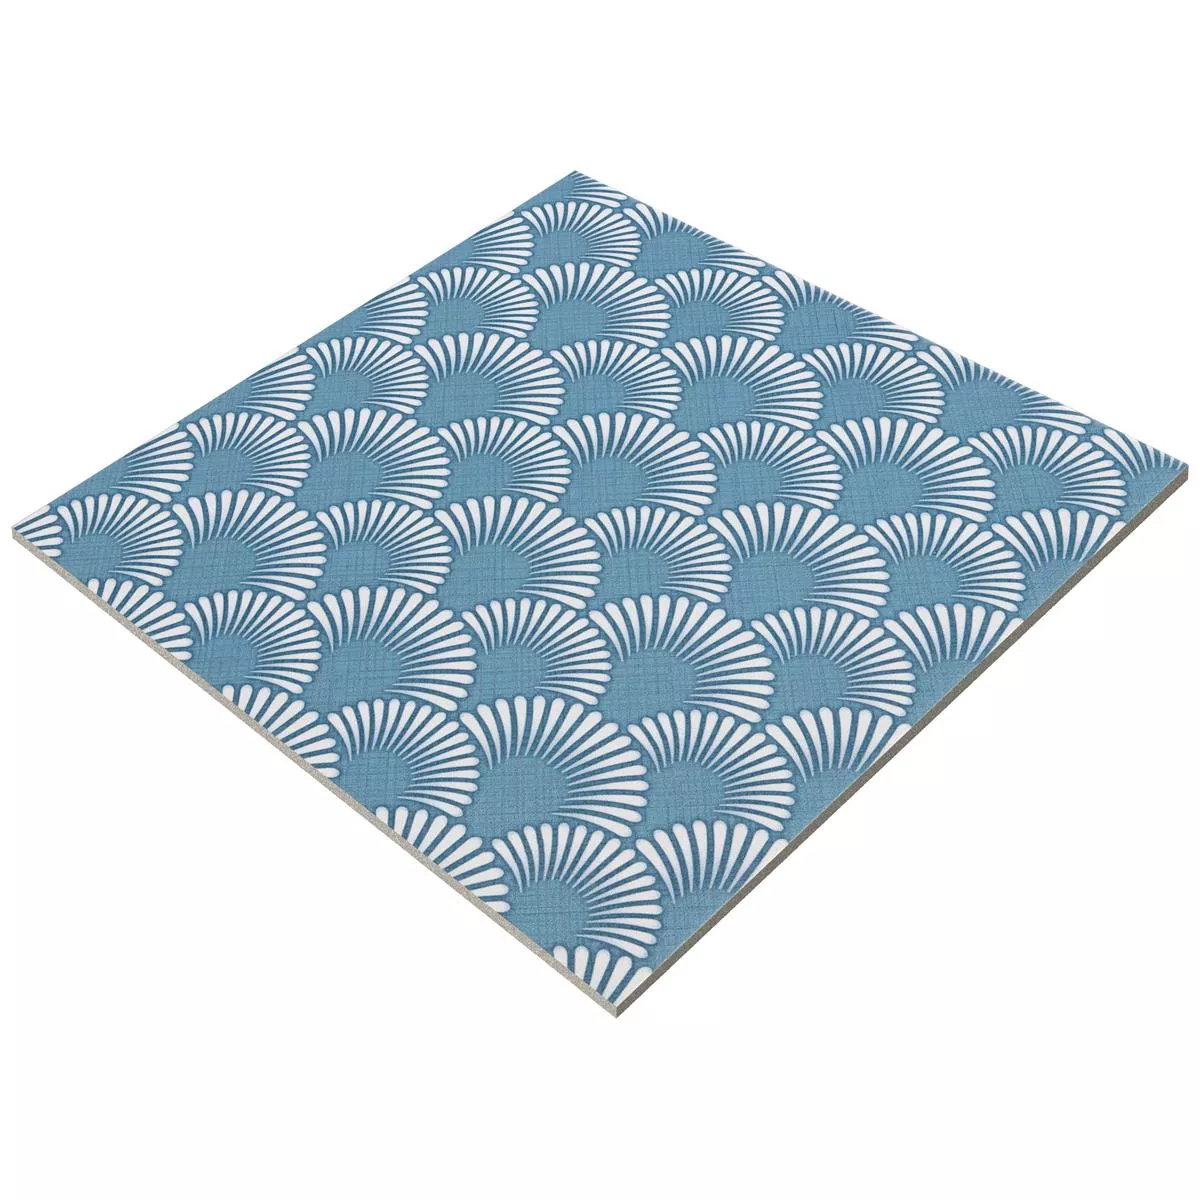 Podlahové Dlaždice Cementový Vzhled Wildflower Modrá Dekor 18,5x18,5cm